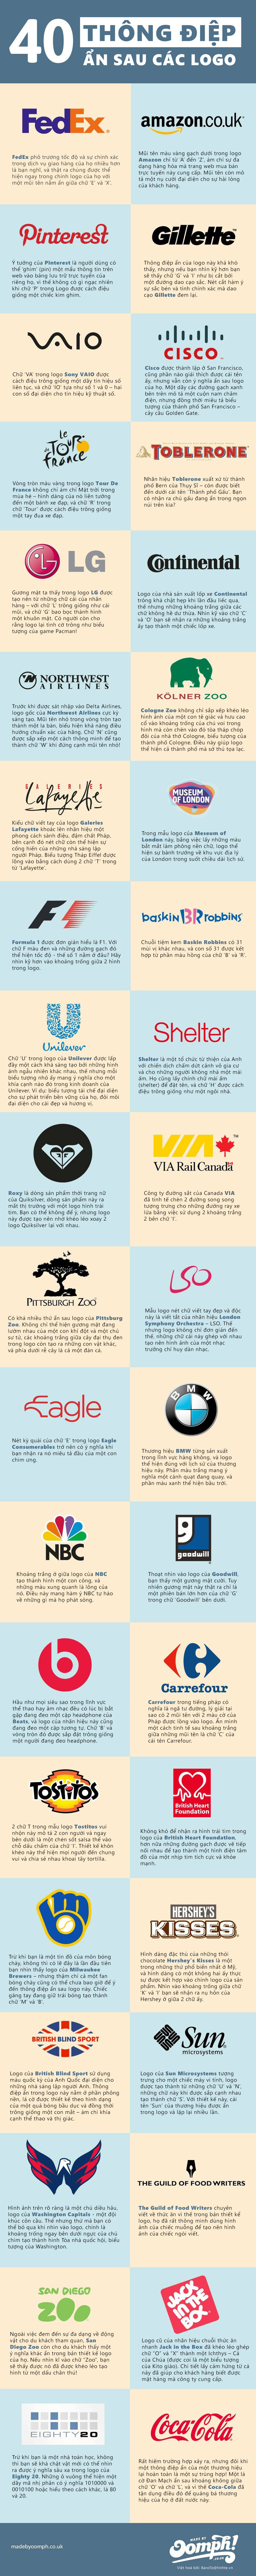 [Infographic] 40 logo ẩn chứa thông điệp doanh nghiệp 19